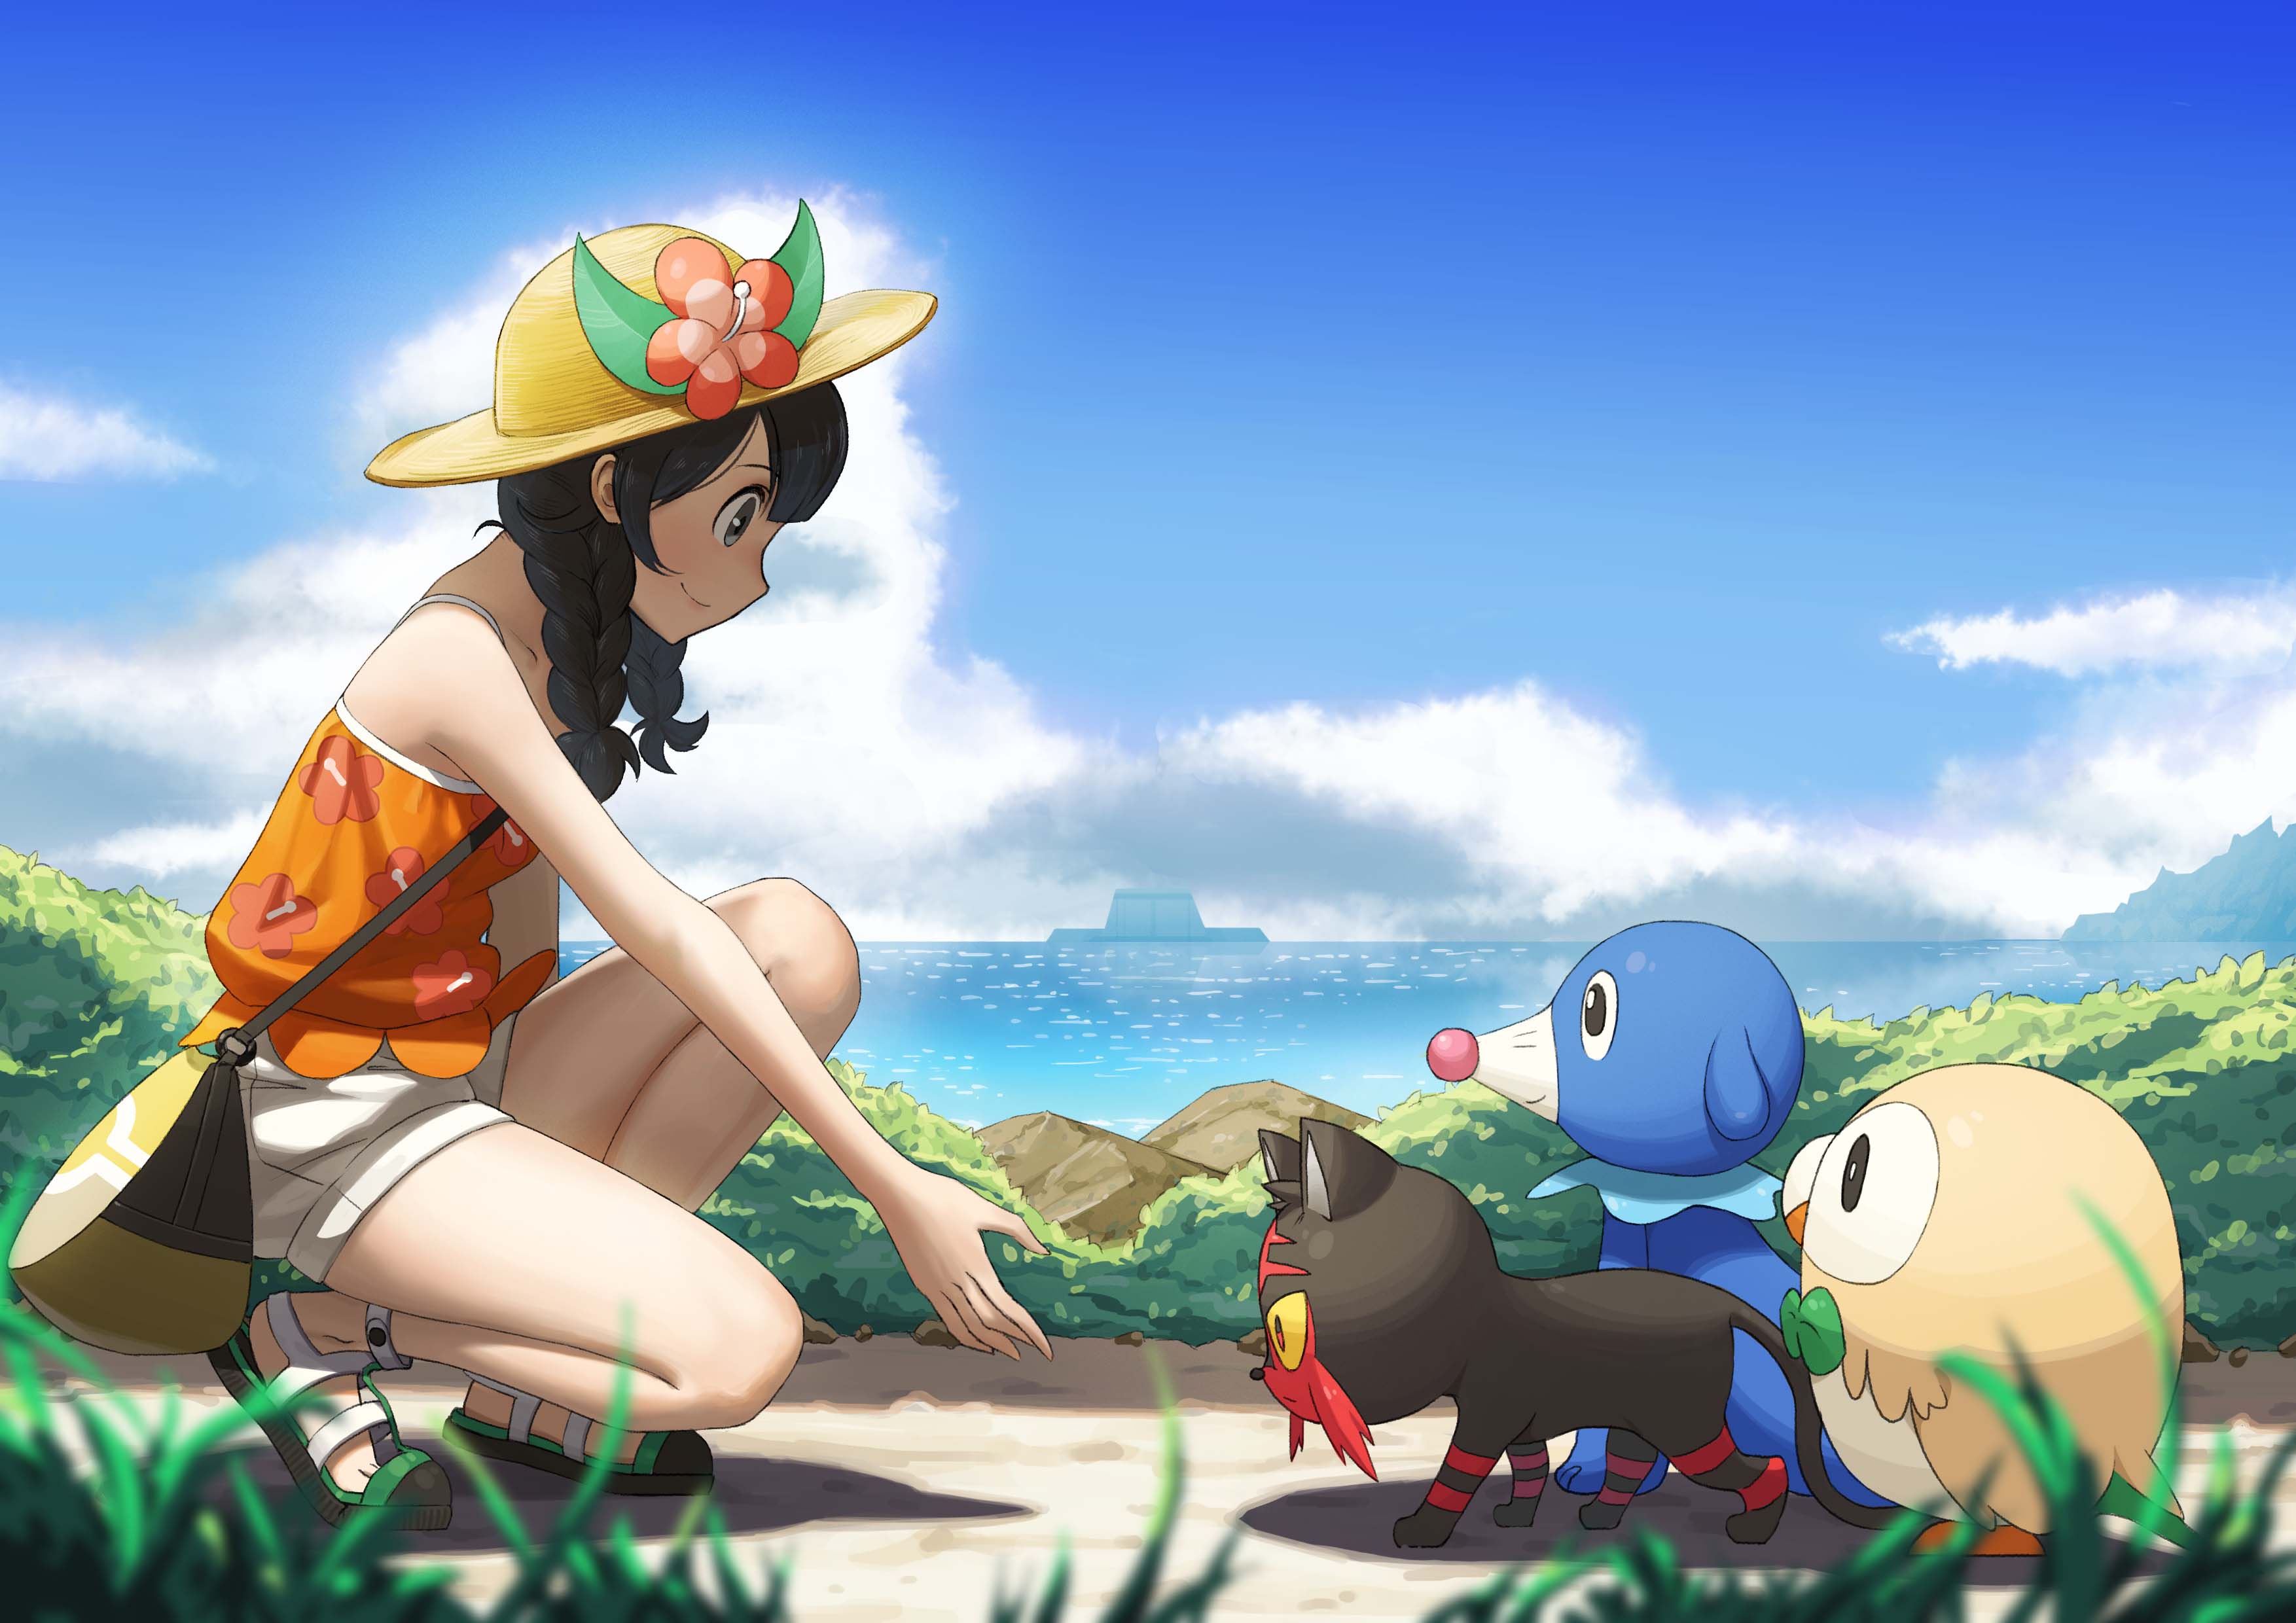 Mizuki and Pokémon by 猫蛋sheep